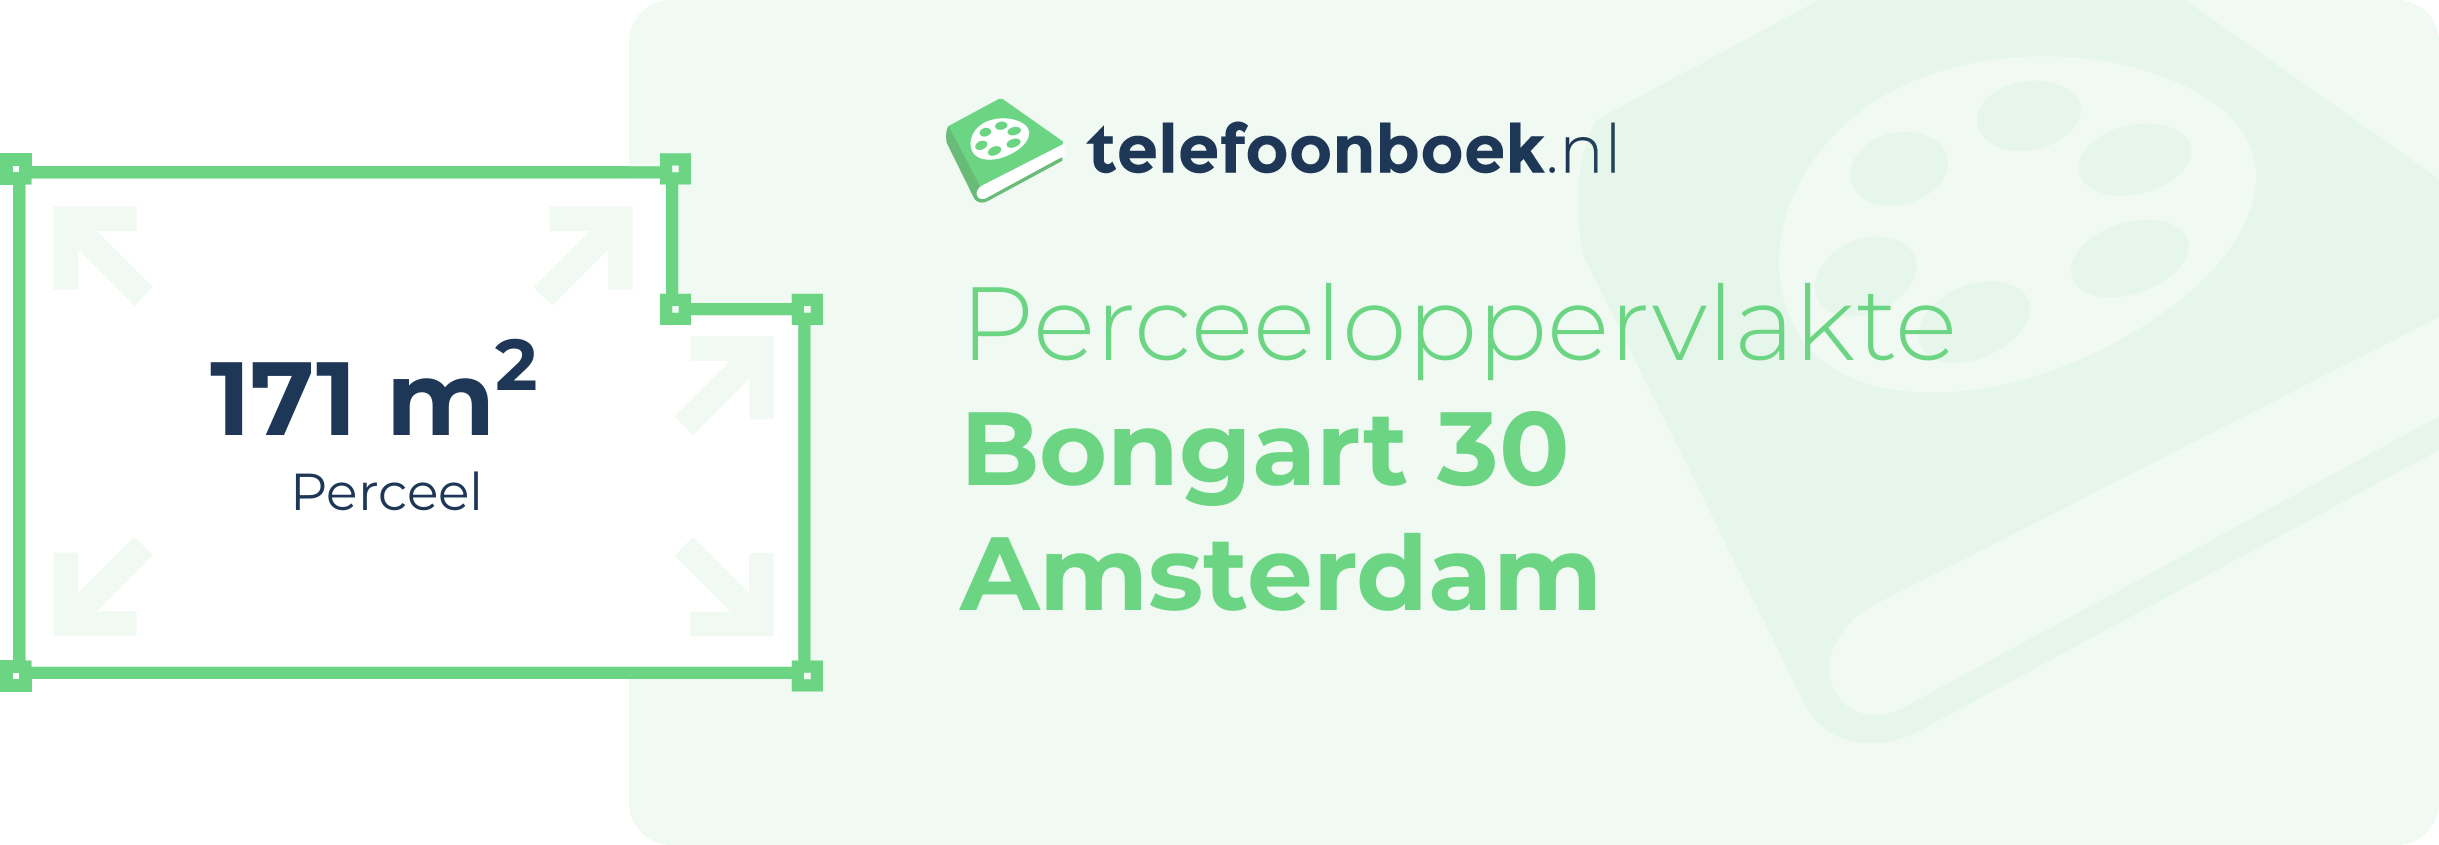 Perceeloppervlakte Bongart 30 Amsterdam